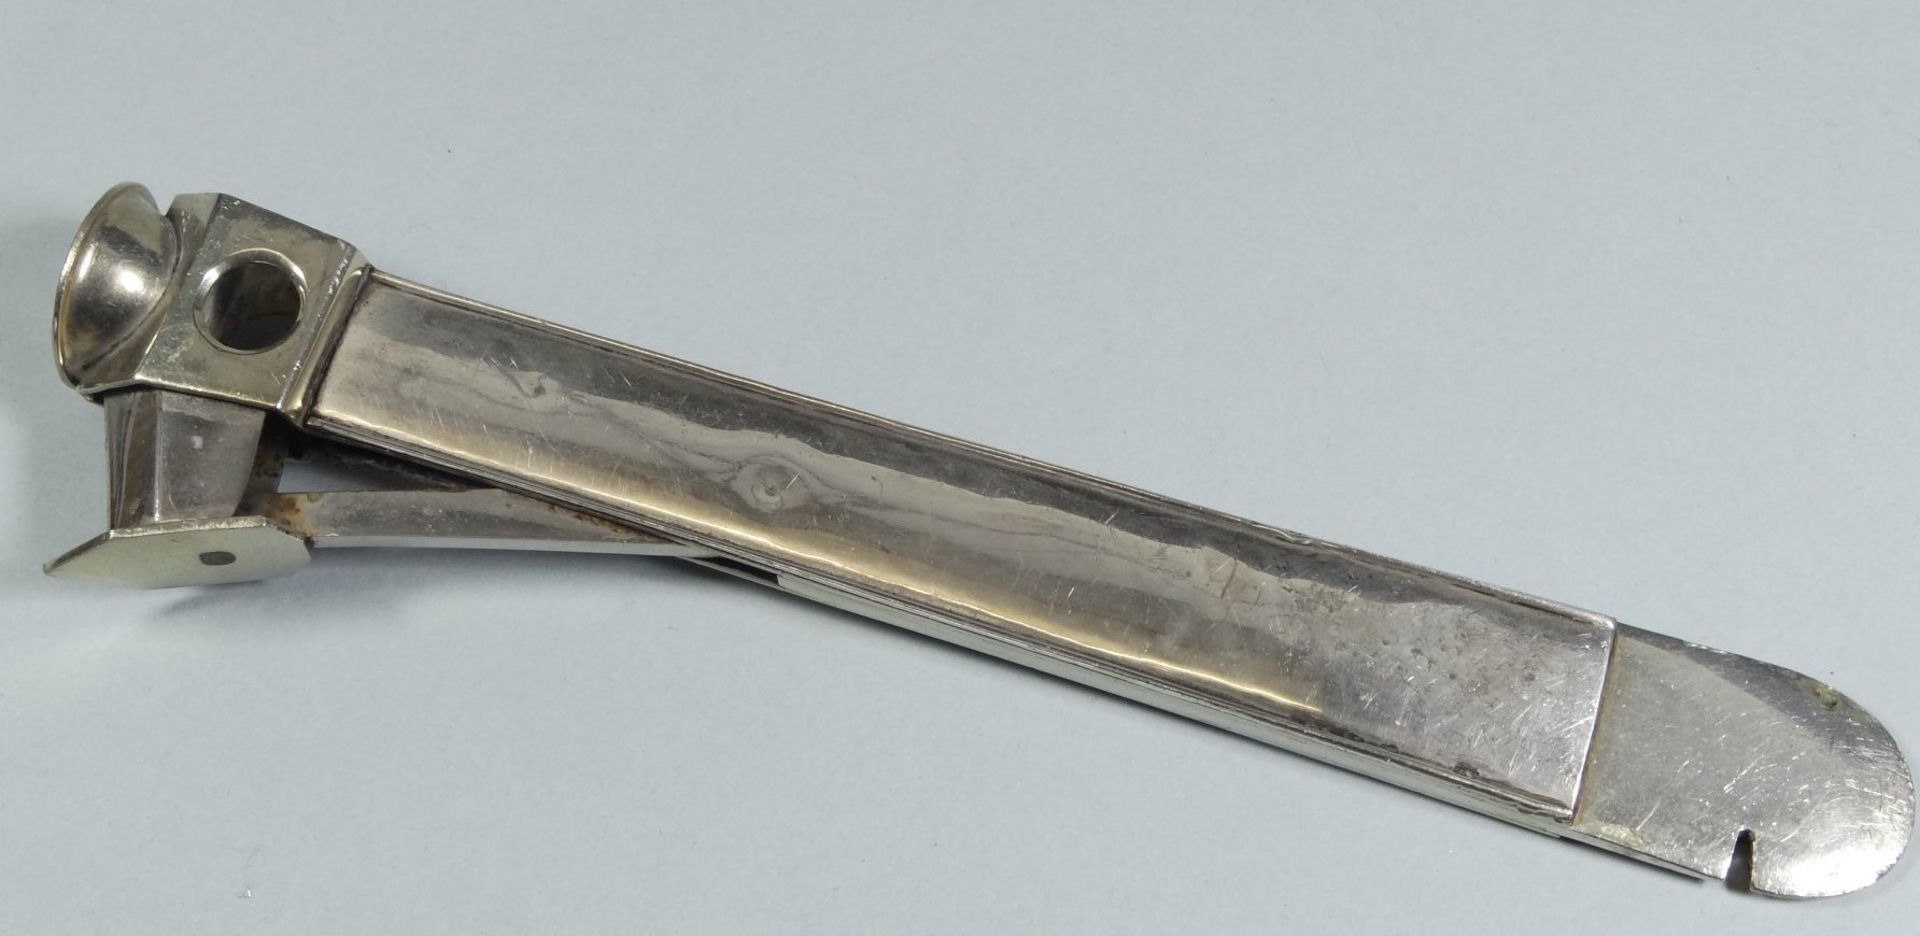 Zigarrenabschneider, Silber-800- Gravur Offz.Scjiessen 1932, Pist. I.Preis, L-17,5 cm, 133 gr. - Bild 3 aus 5